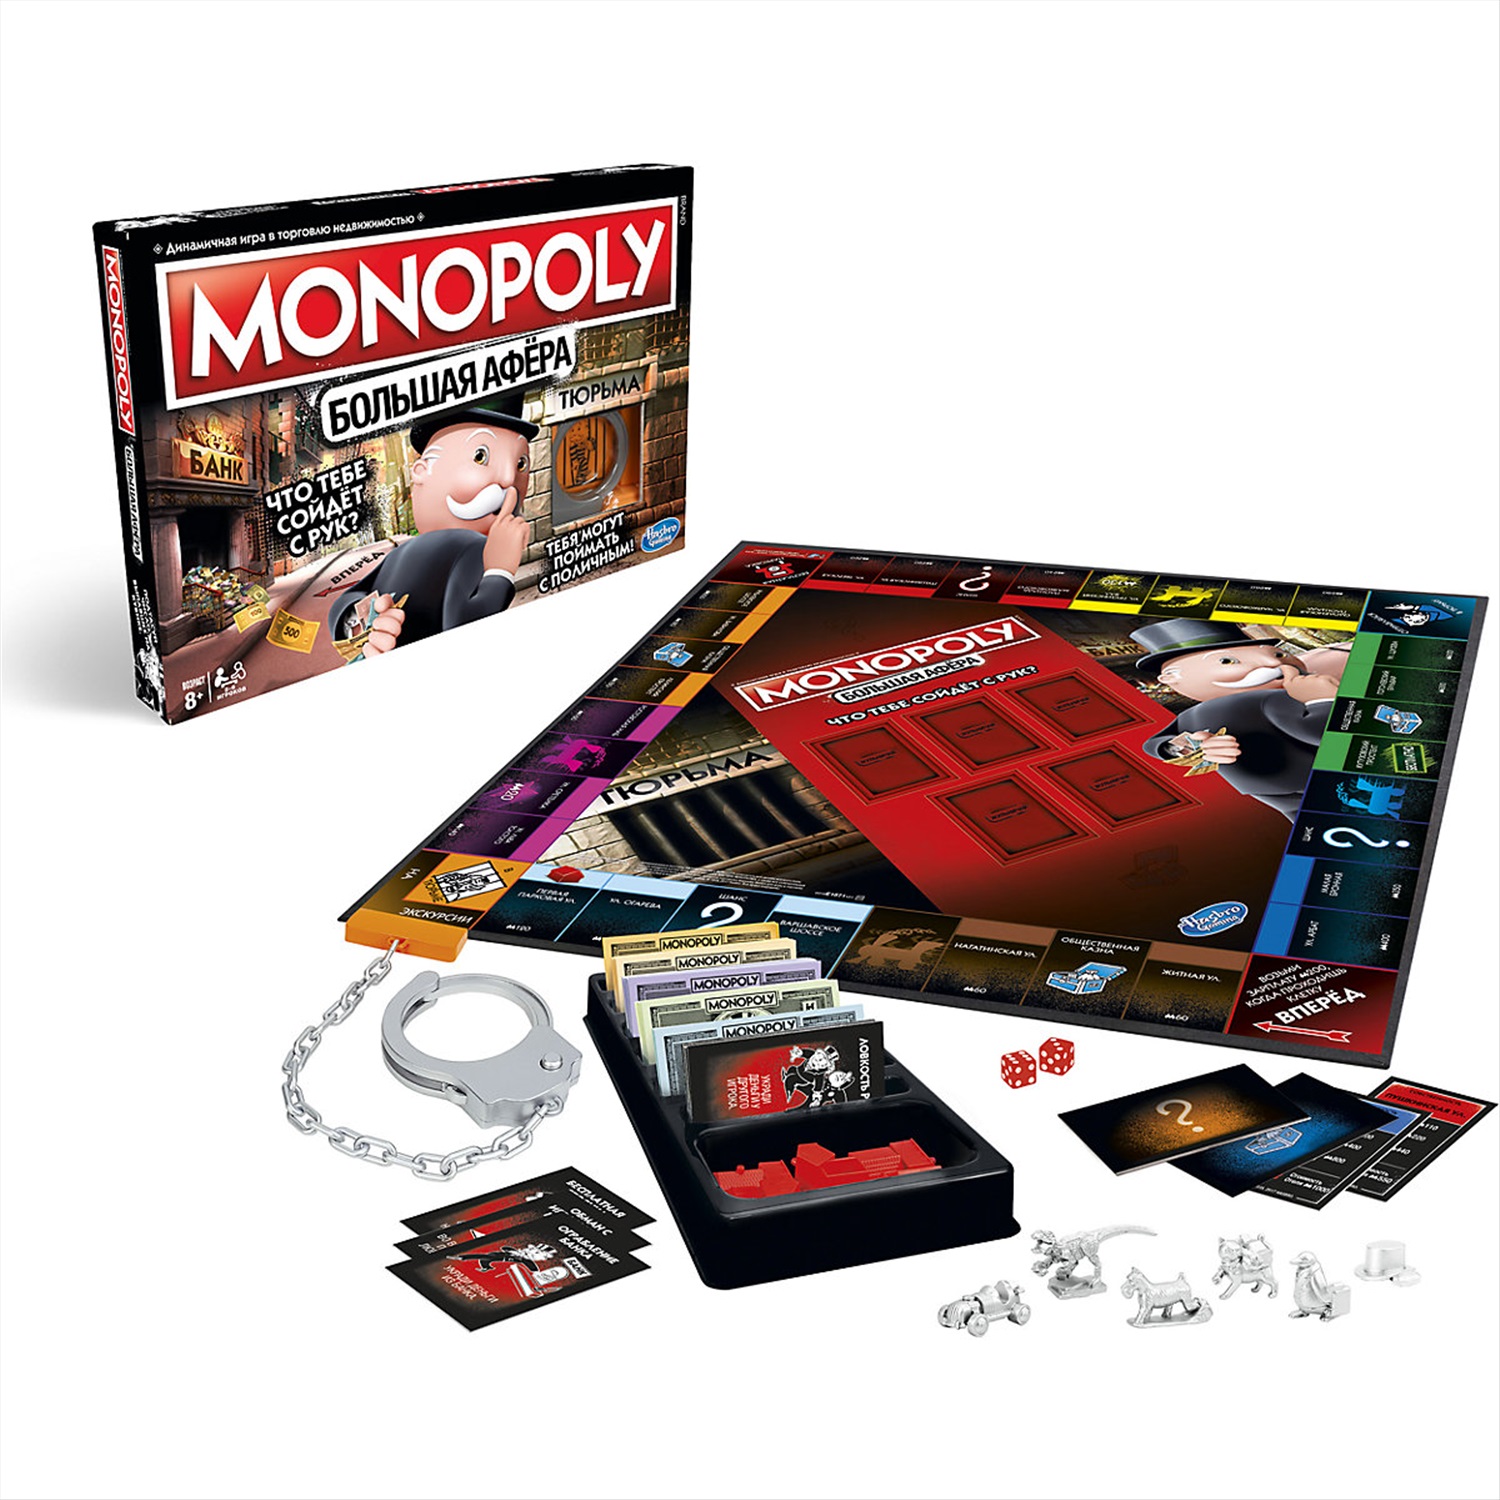 Монополия стратегия. Игра настольная Hasbro "Монополия большая афера". Настольная игра Monopoly большая афера. Монополия Хасбро большая афера. Монополия Monopoly Хасбро.